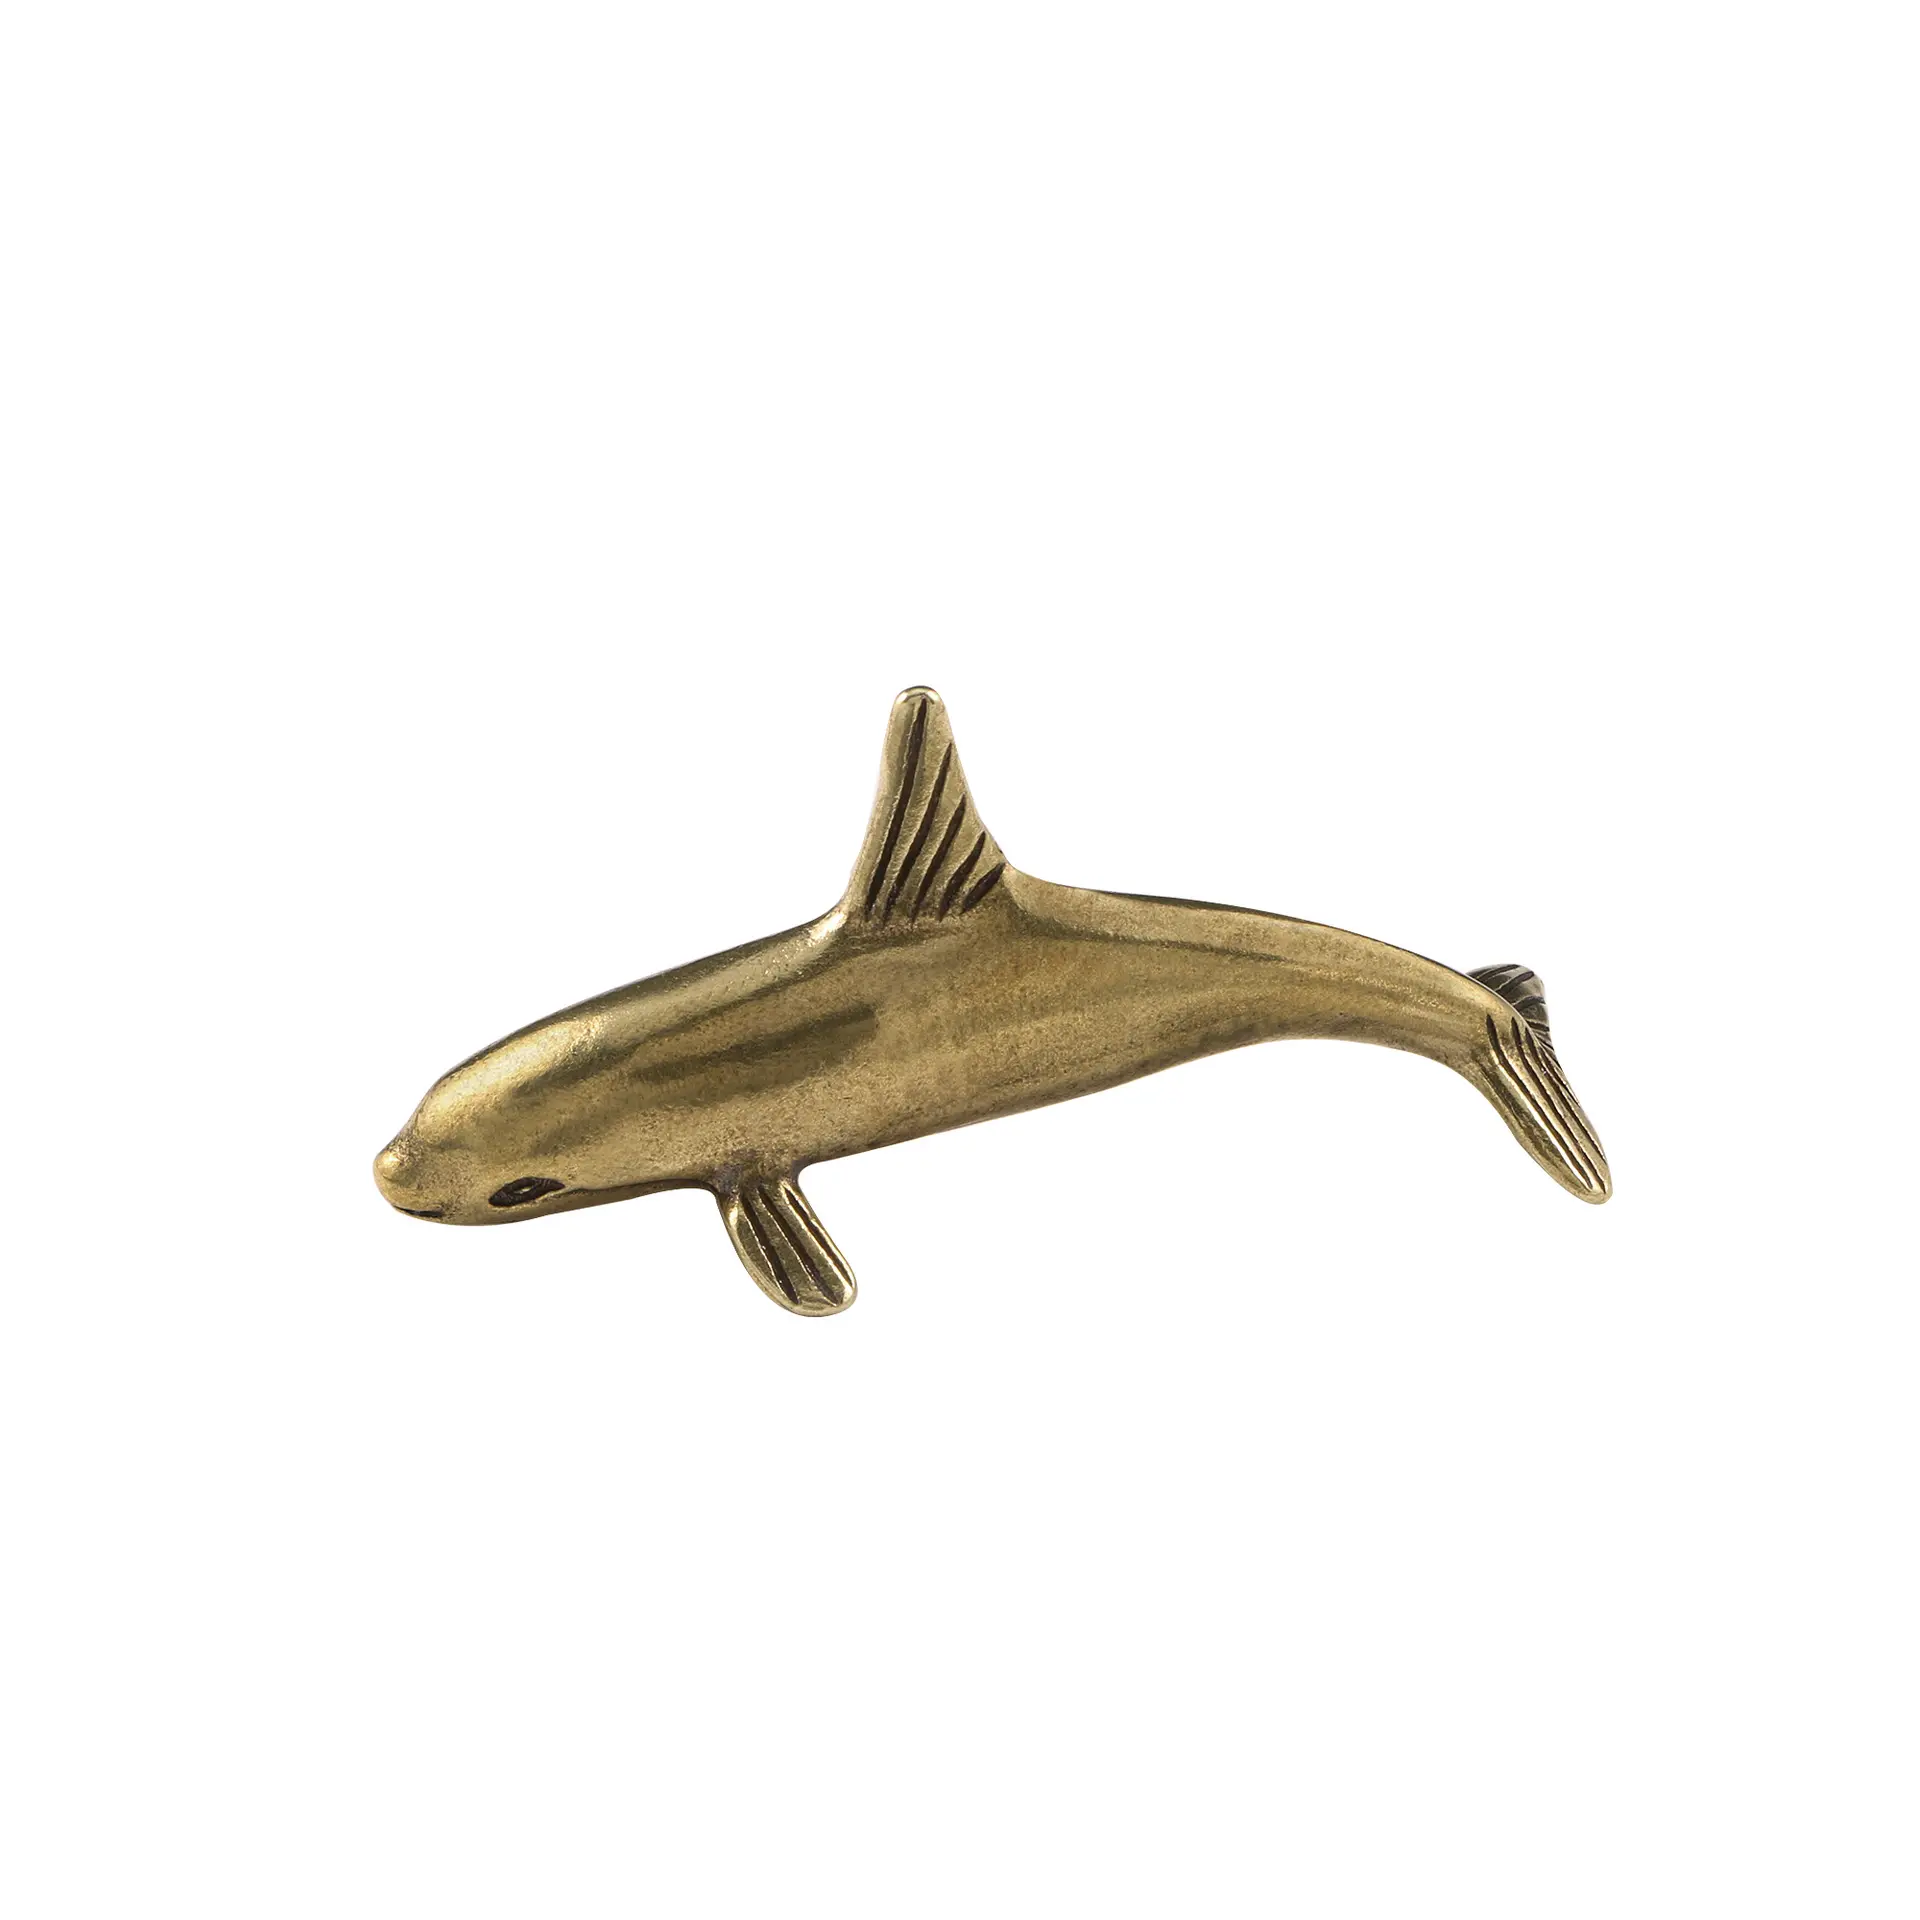 Ornamentos de bronze golfinho sorridente, brinquedo antigo com artesanato de decoração de vida marinha antiga.